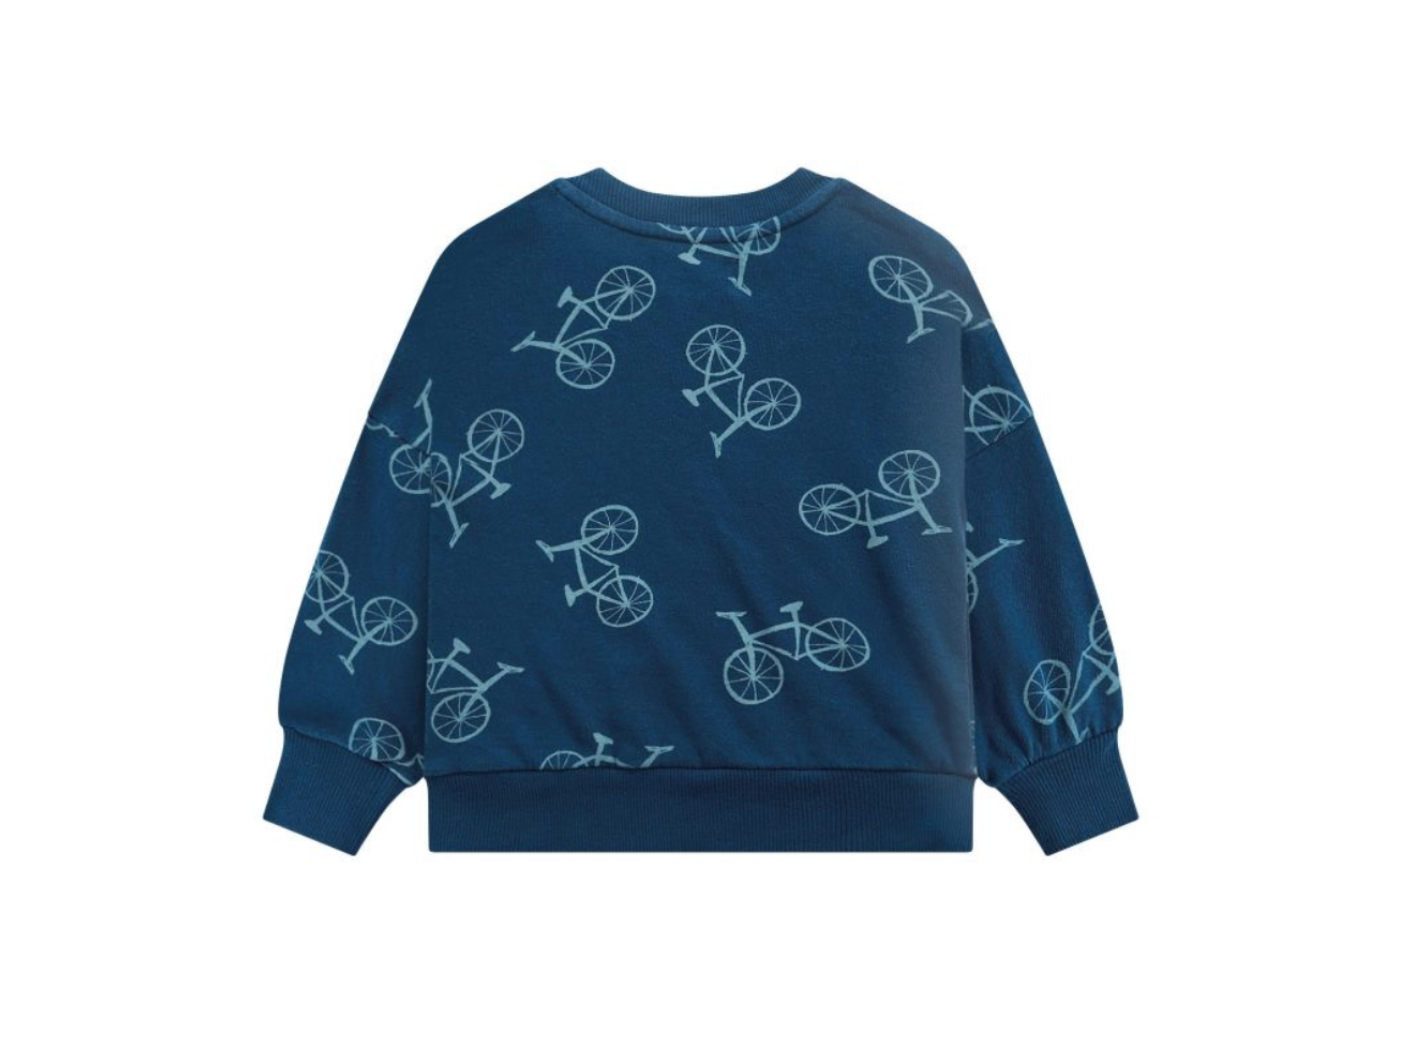 BOBO CHOSES - Sweat en coton bleu marine motif bicyclettes - 12/18 mois